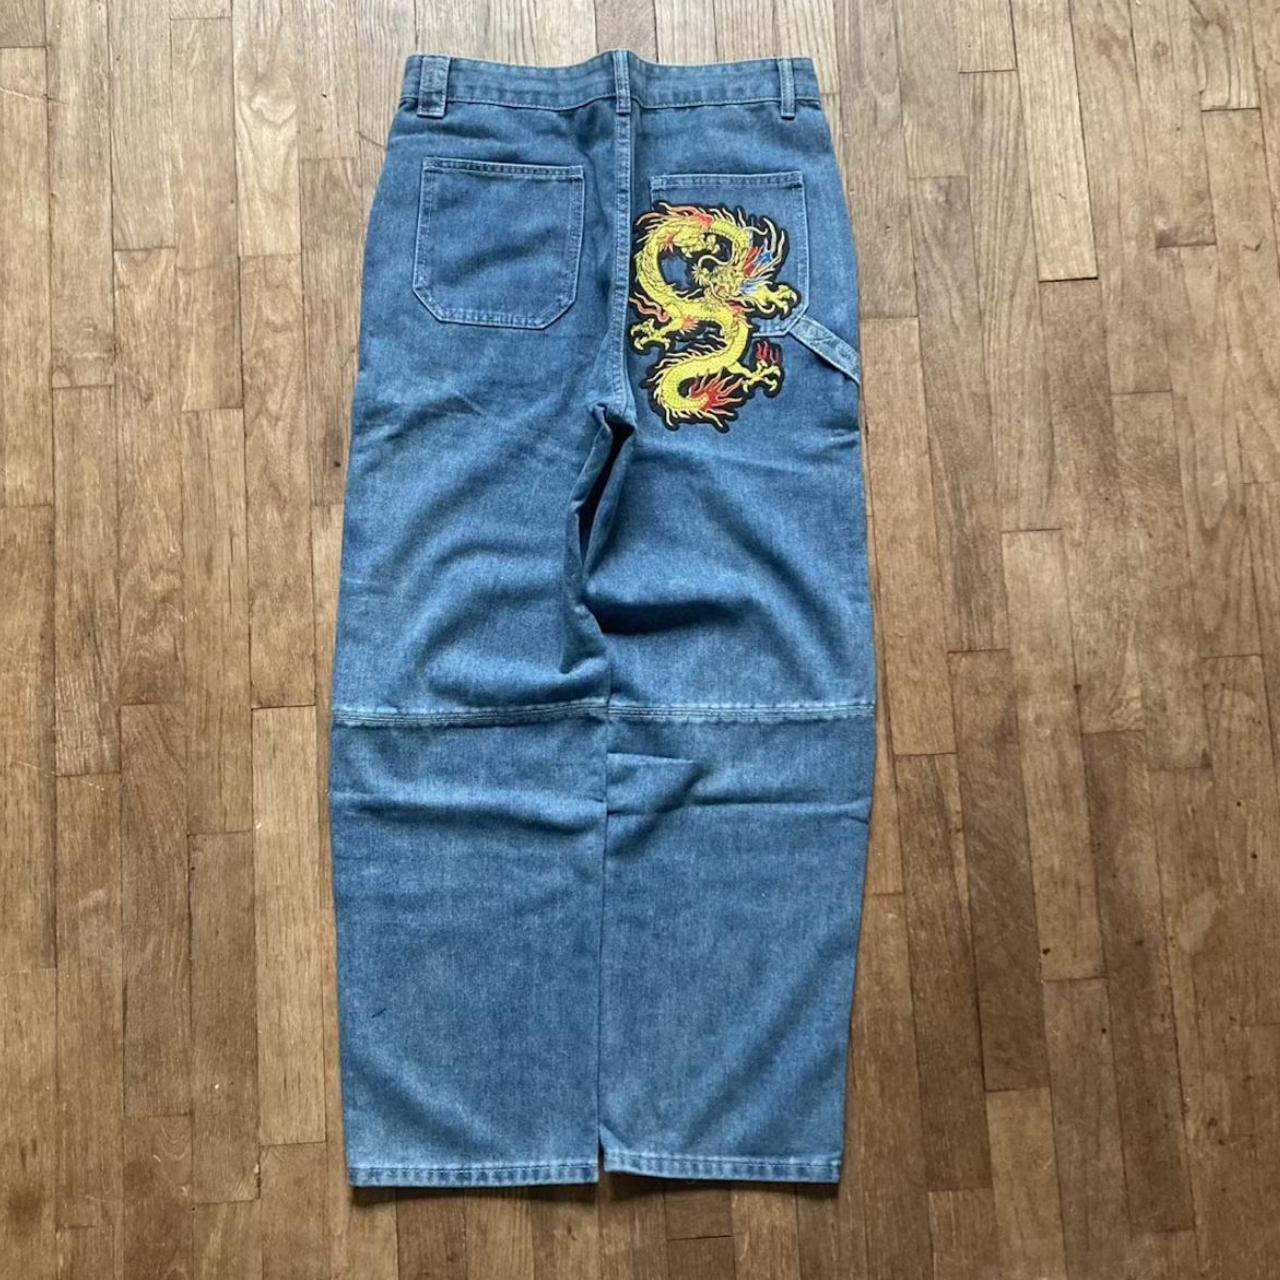 y2k baggy dragon patch jeans Size 34 Measurments... - Depop